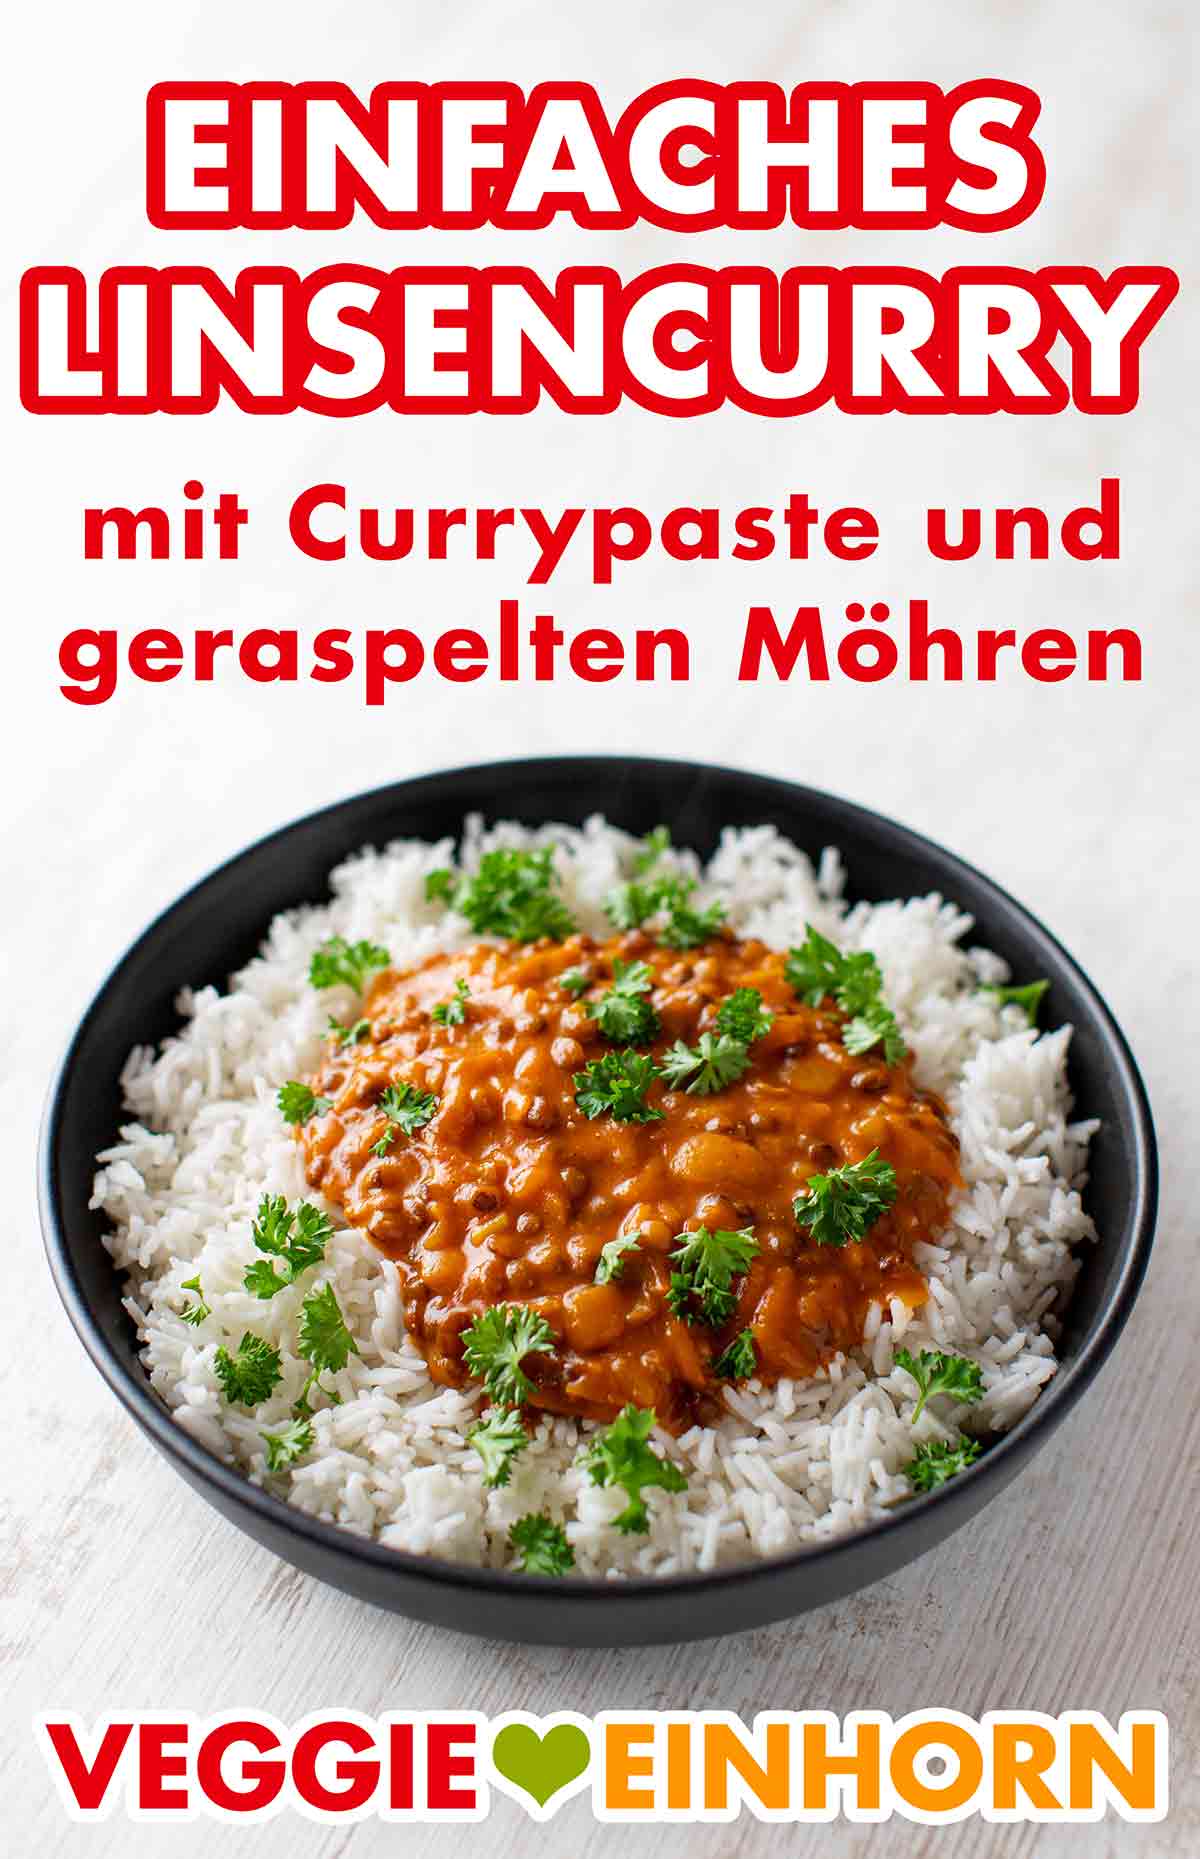 Teller mit einfachem Linsencurry mit Currypaste und geraspelten Möhren